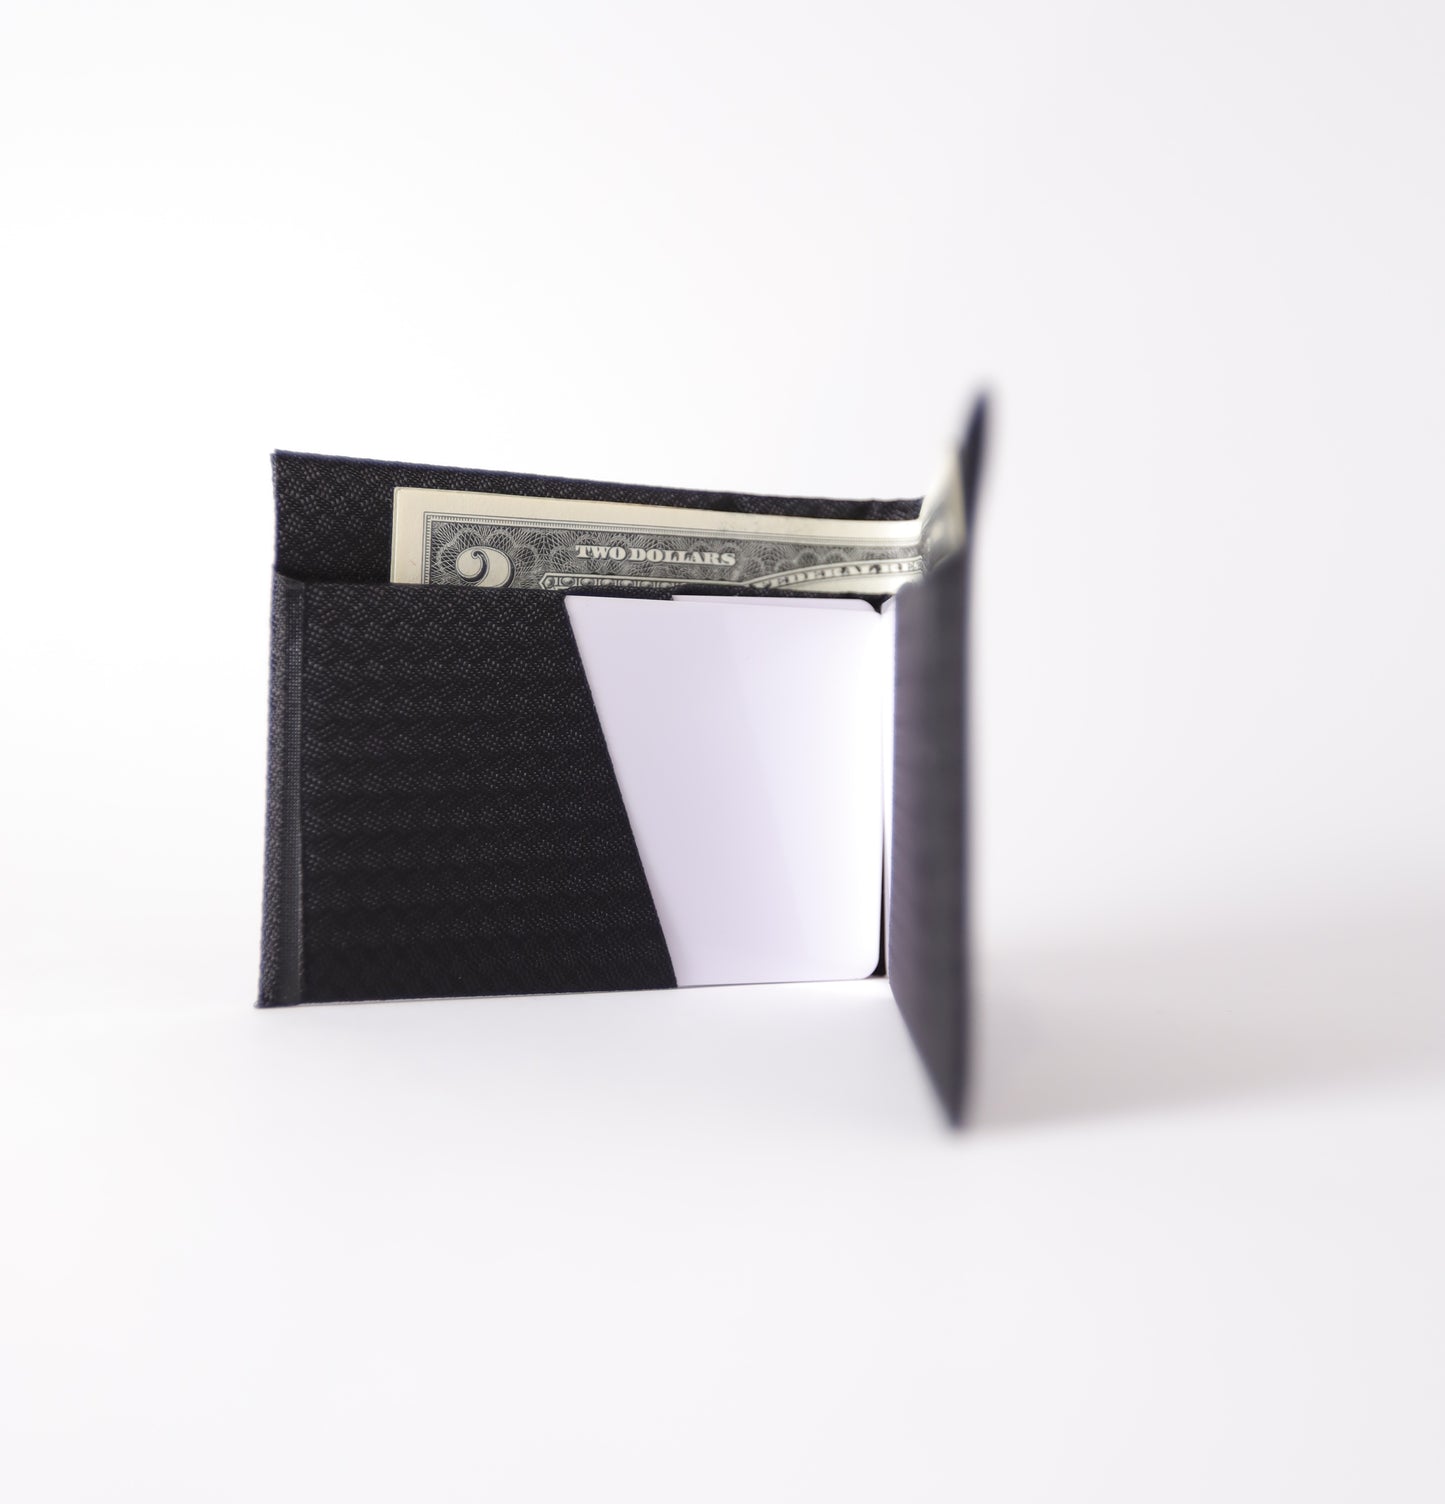 The Bi-Fold Wallet